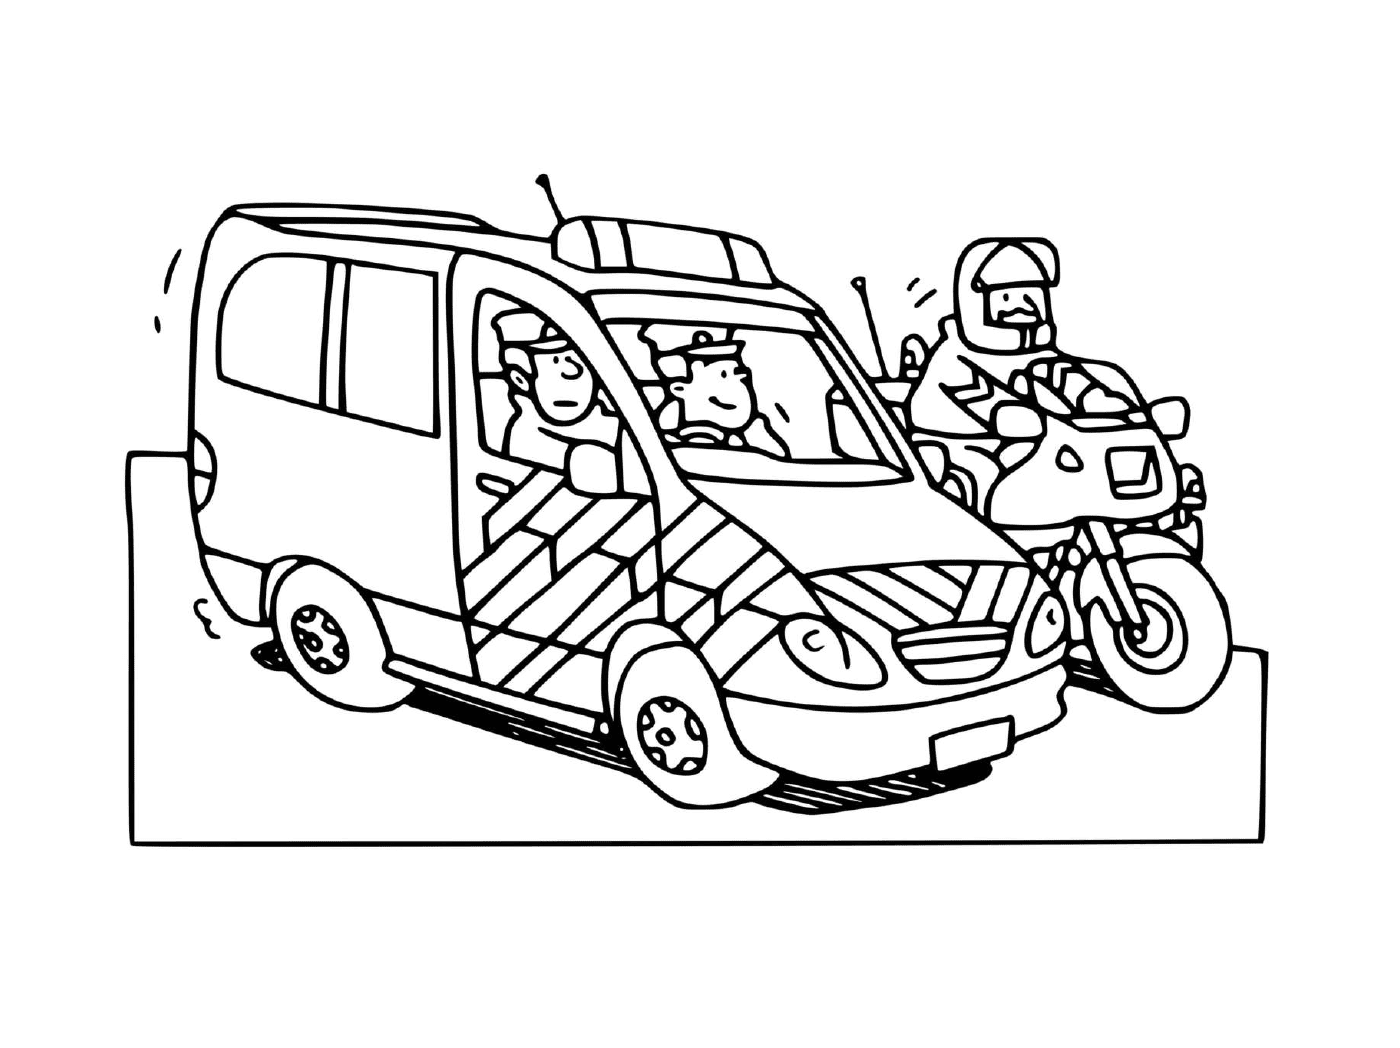  Французский полицейский автомобиль с мотоциклом 